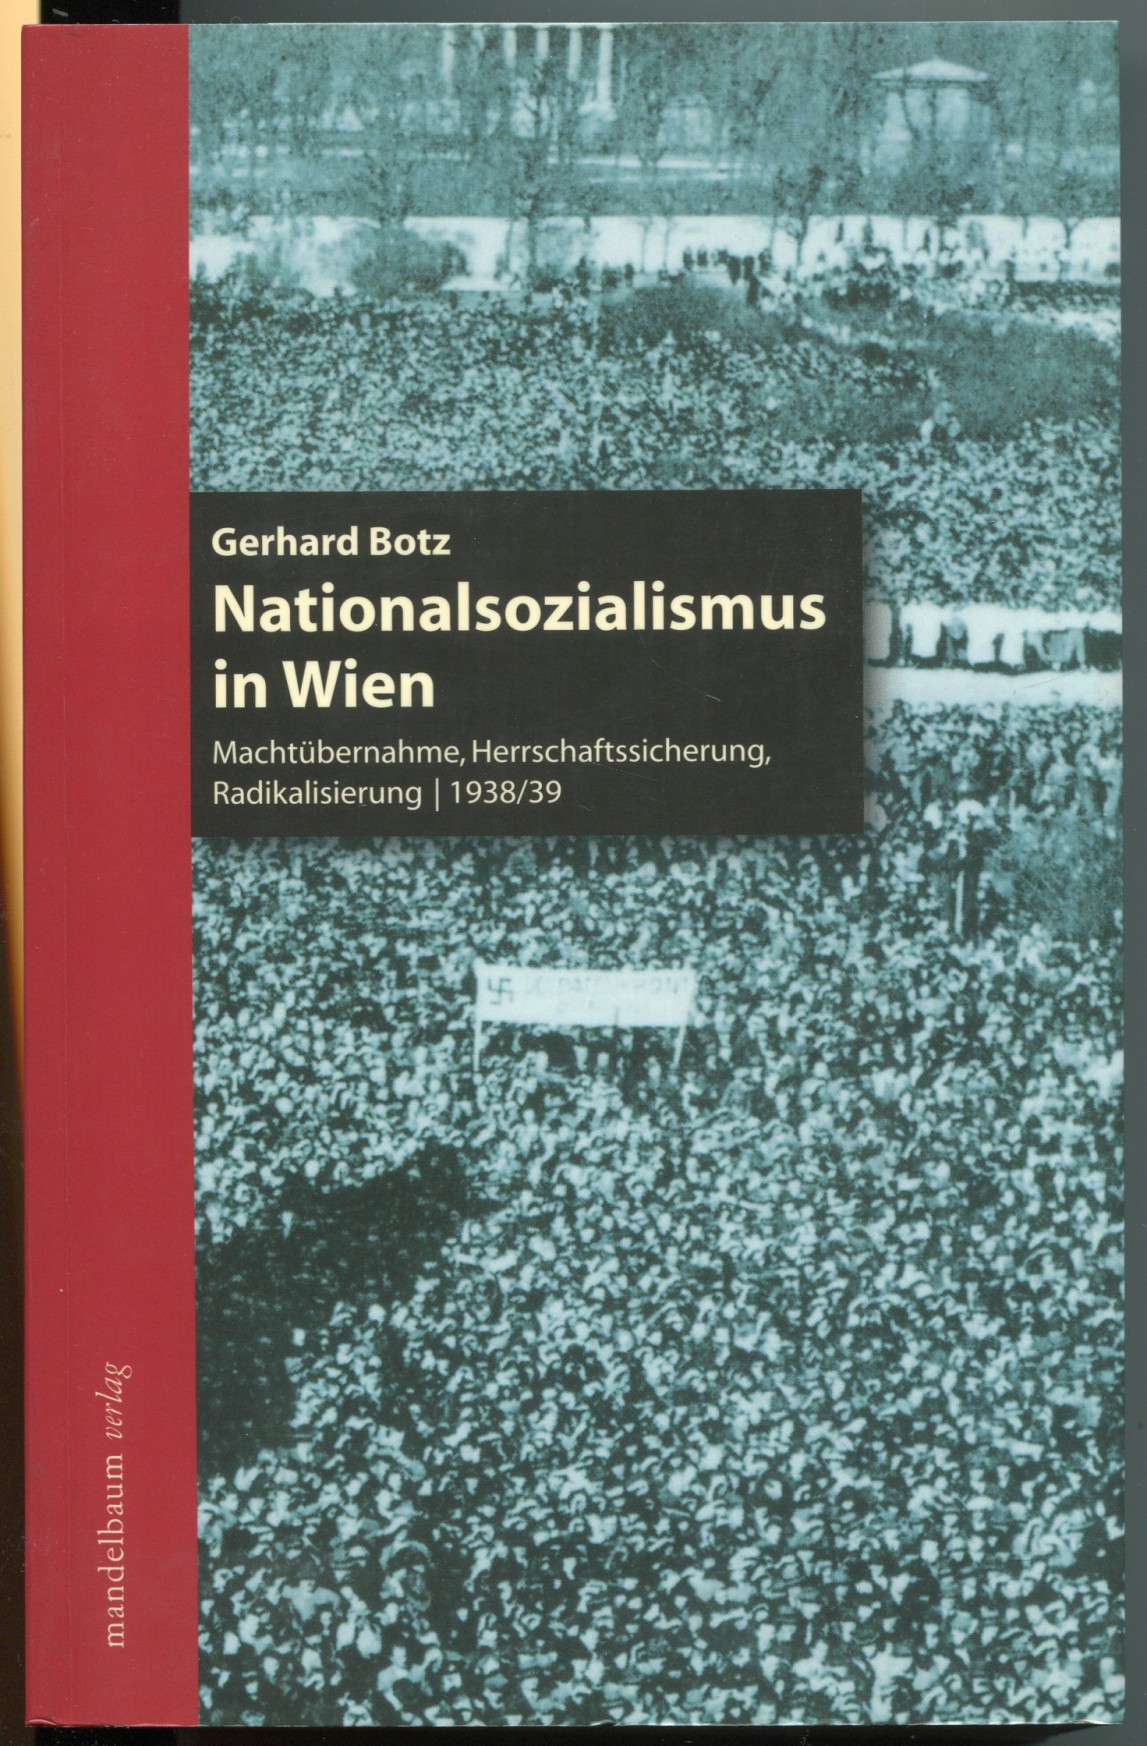 Nationalsozialismus in Wien. Machtübernahme, Herrschaftssicherung, Radikalisierung, 1938/39. Überarbeitete und erweiterte Neuauflage - Botz, Gerhard